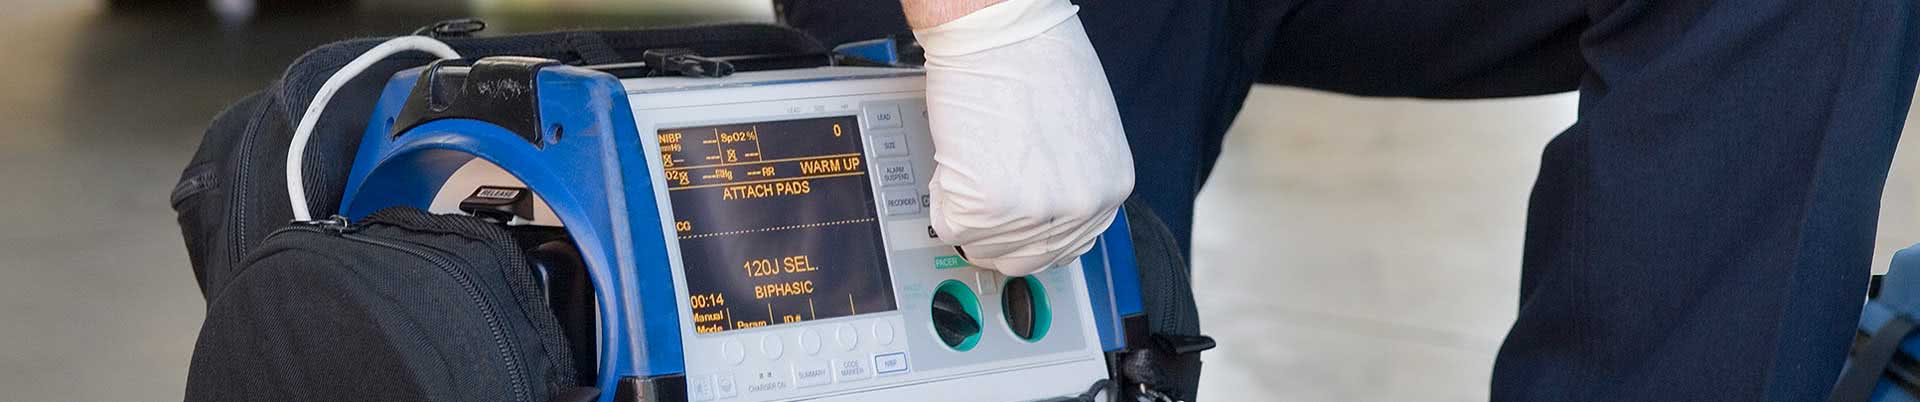 Notfallmedizinische Ausstattung - Arzt stellt tragbaren Defibrillator ein